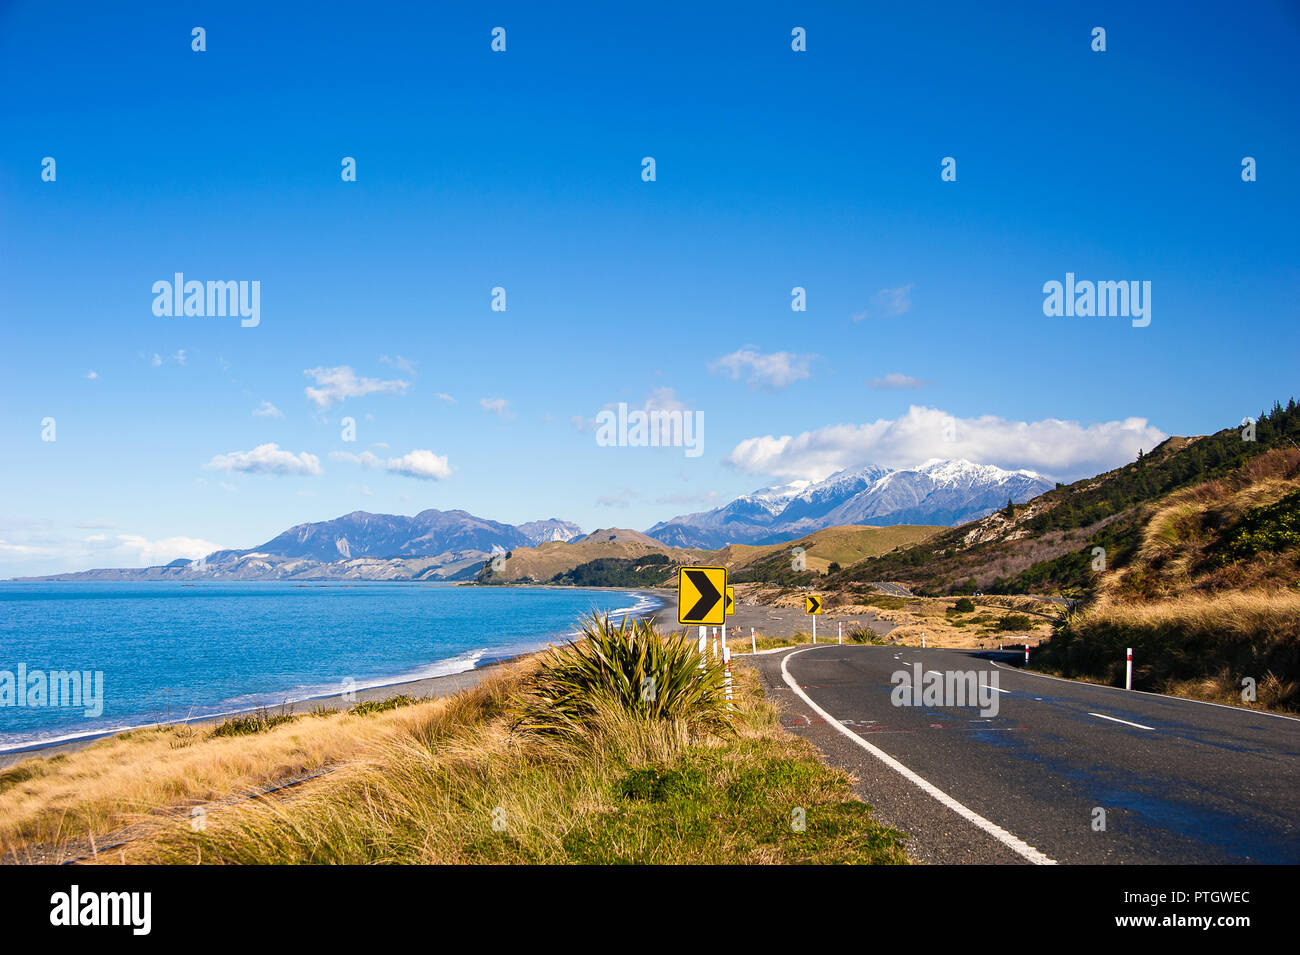 Autostrada statale 1, iconico percorso costiero vicino a Kaikoura, Nuova Zelanda, uno dei top costieri nel mondo. Montagne innevate incontra il mare, il cielo e la strada Foto Stock